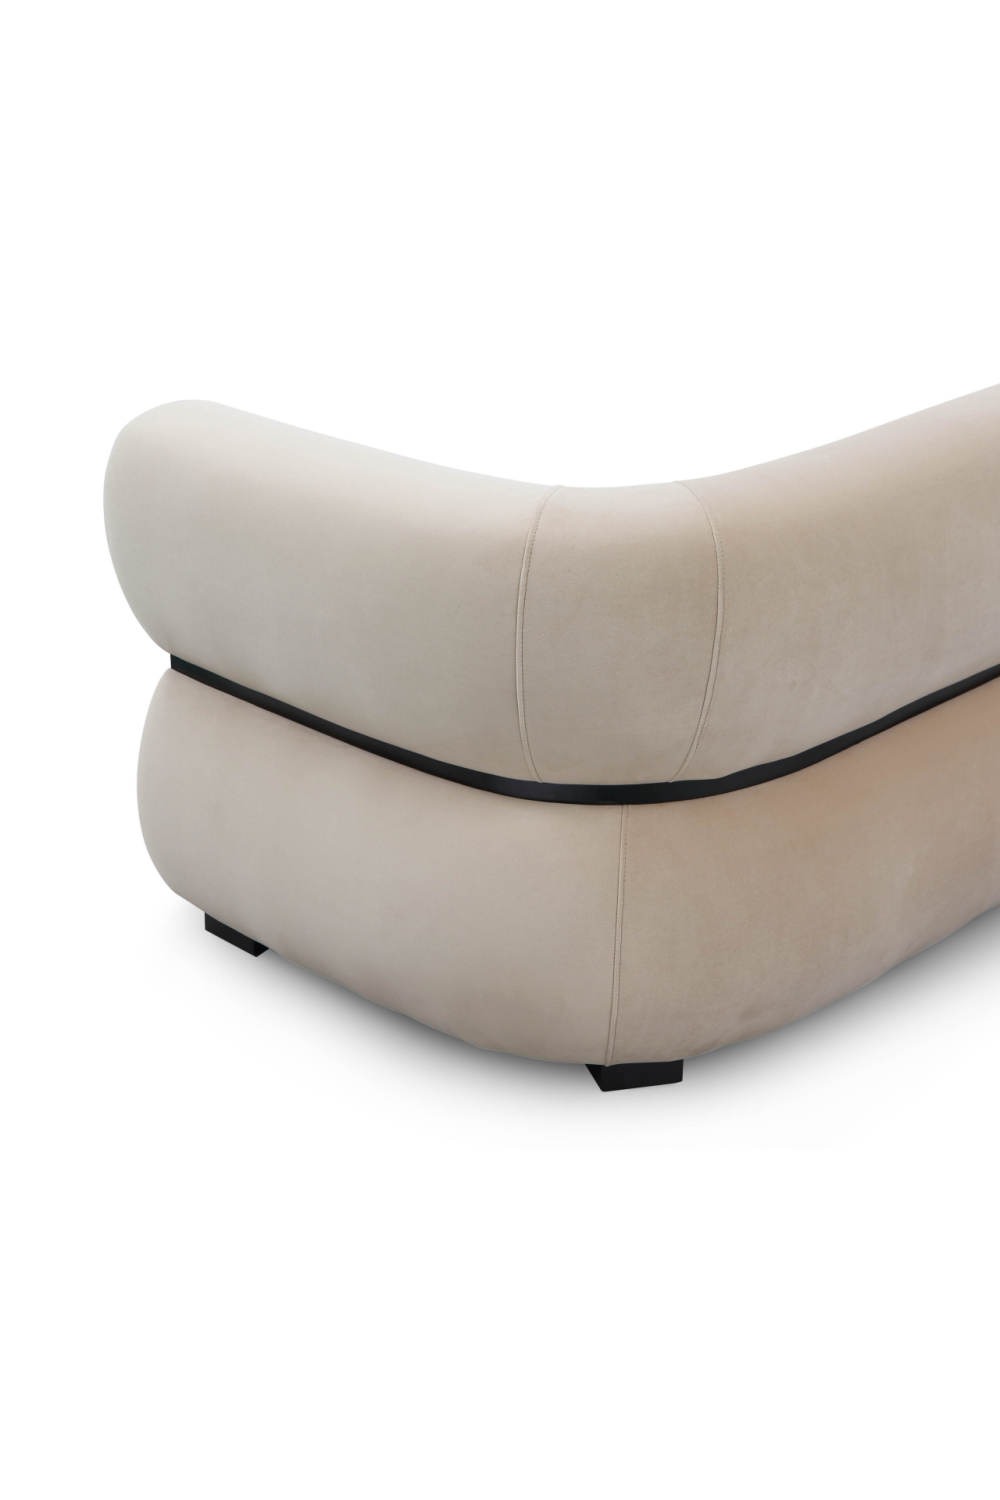 Beige Velvet Curved Sofa | Liang & Eimil Volta | Oroa.com